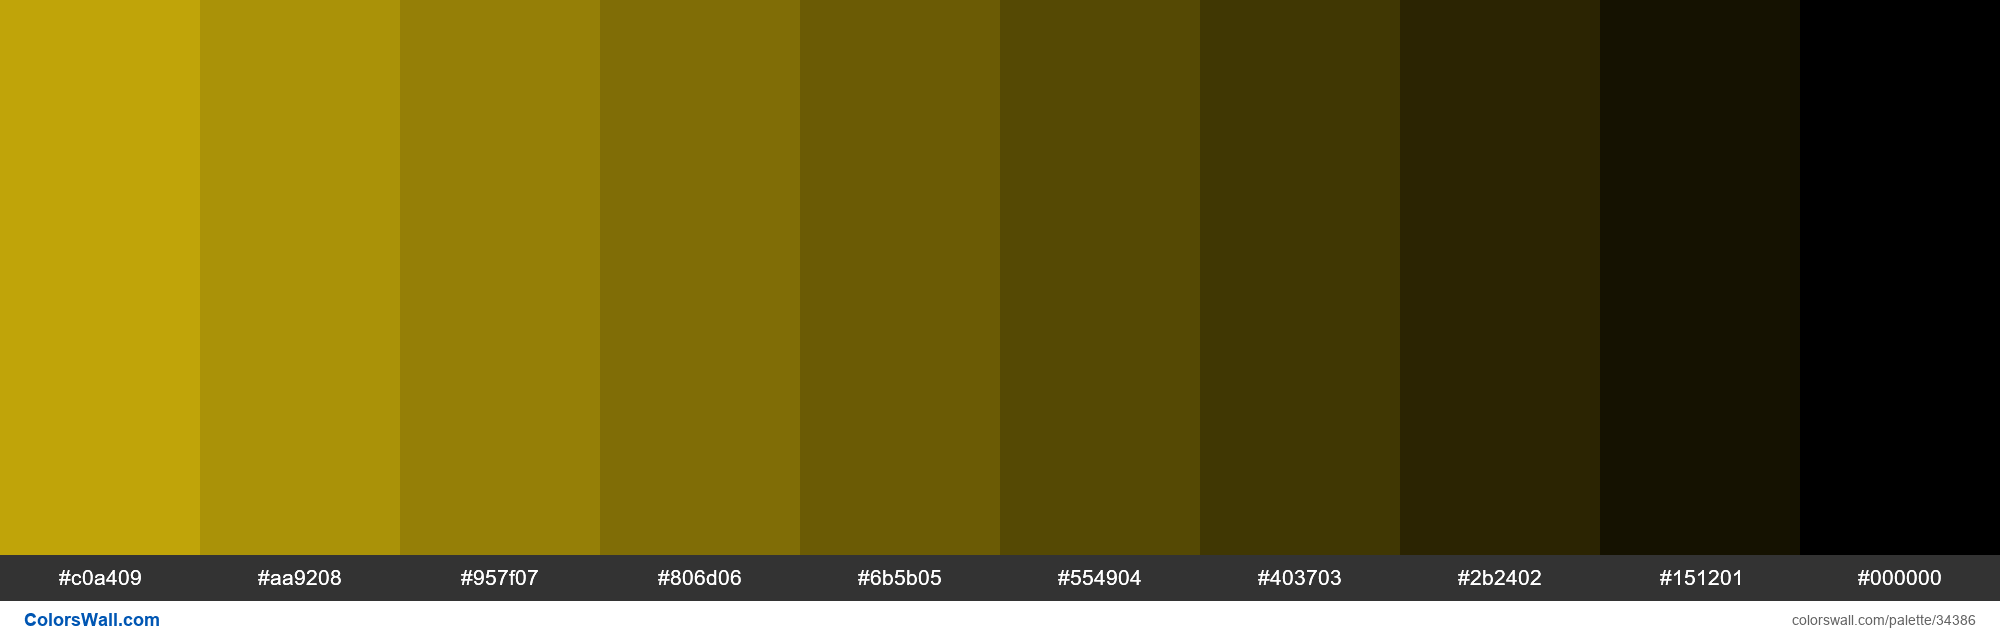 Shades XKCD Color dark yellow #d5b60a hex paleta de colores | ColorsWall